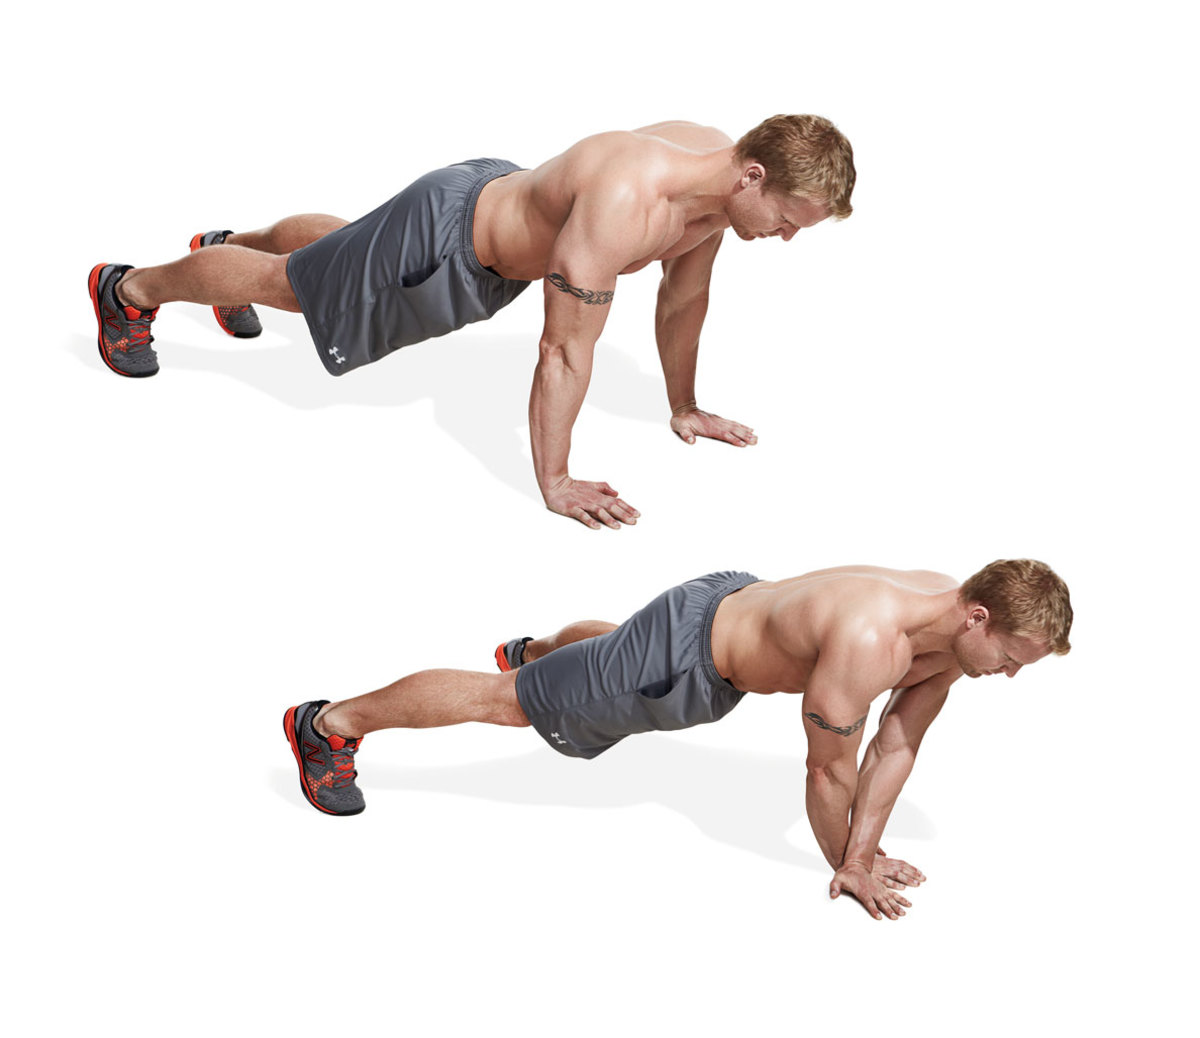 50 Best Shoulder Exercises To Target Full Range of Motion - Men's Journal